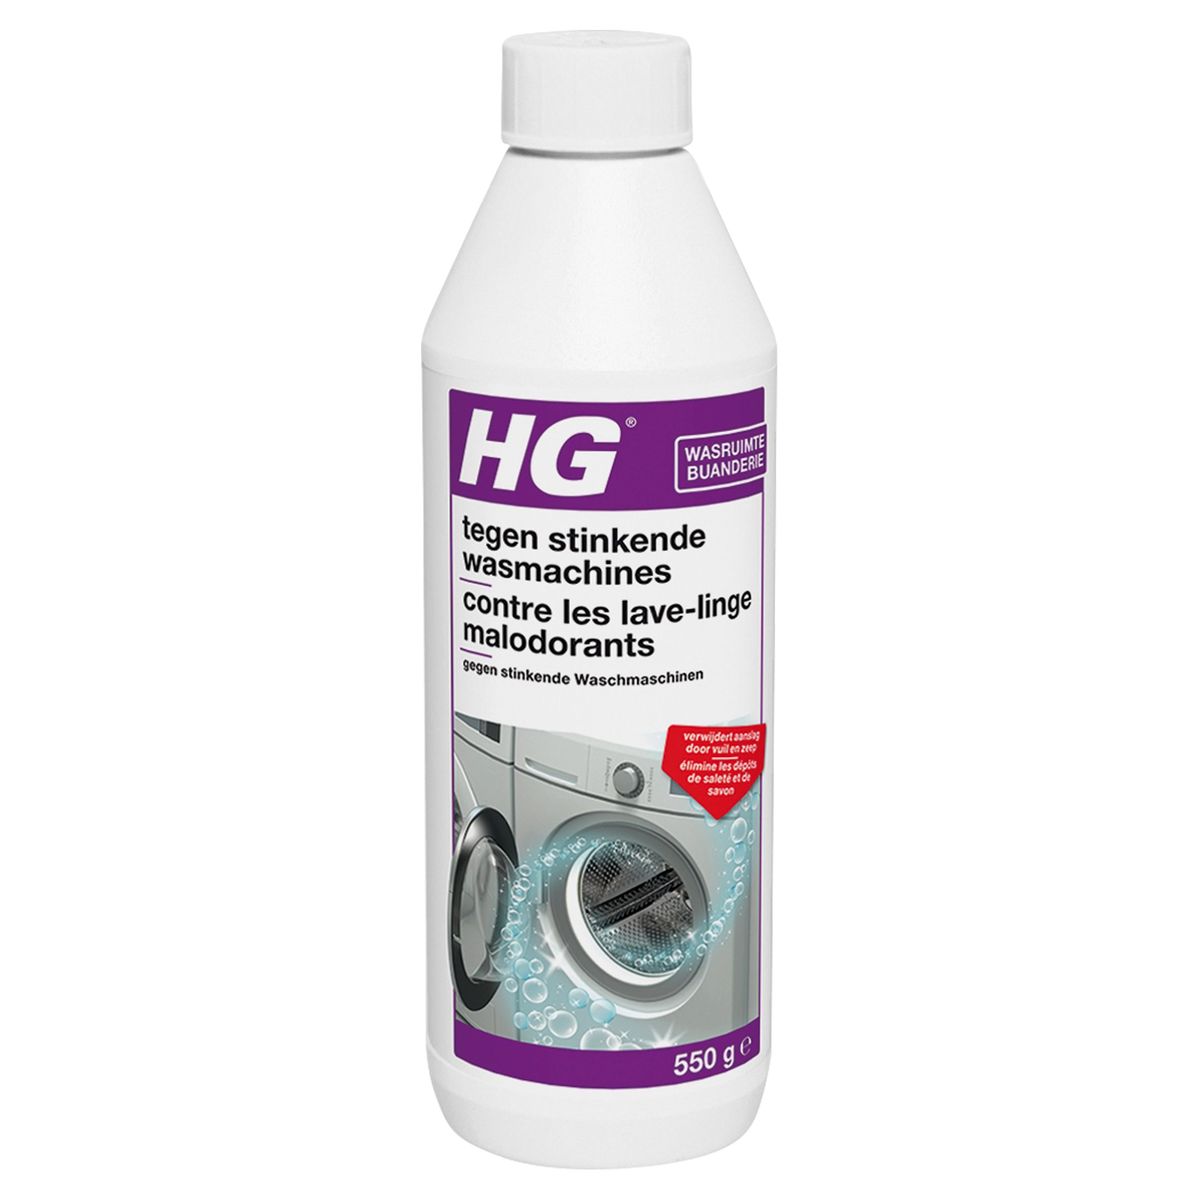 HG Contre les Lave-Linge Malodorants 550 g